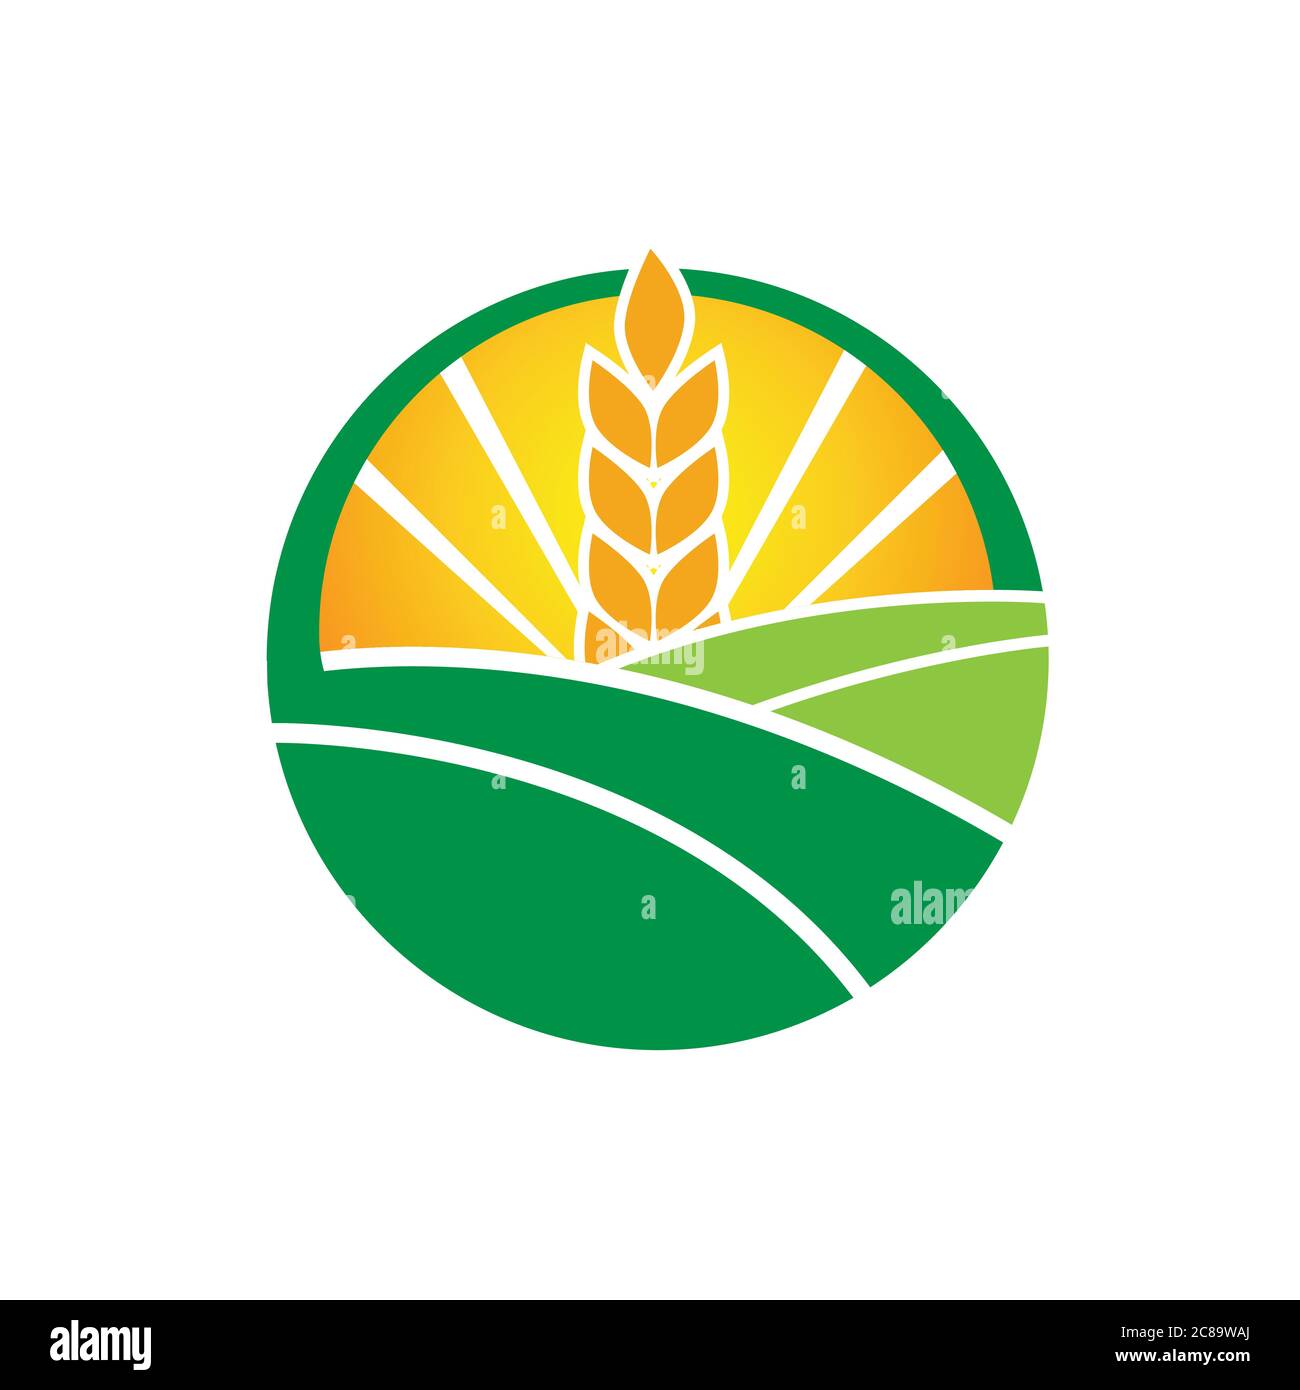 Weizenhof Agrarkultur Bauernhof Design Vektor Landwirtschaft und Landwirtschaft Logo Illustration Stock Vektor